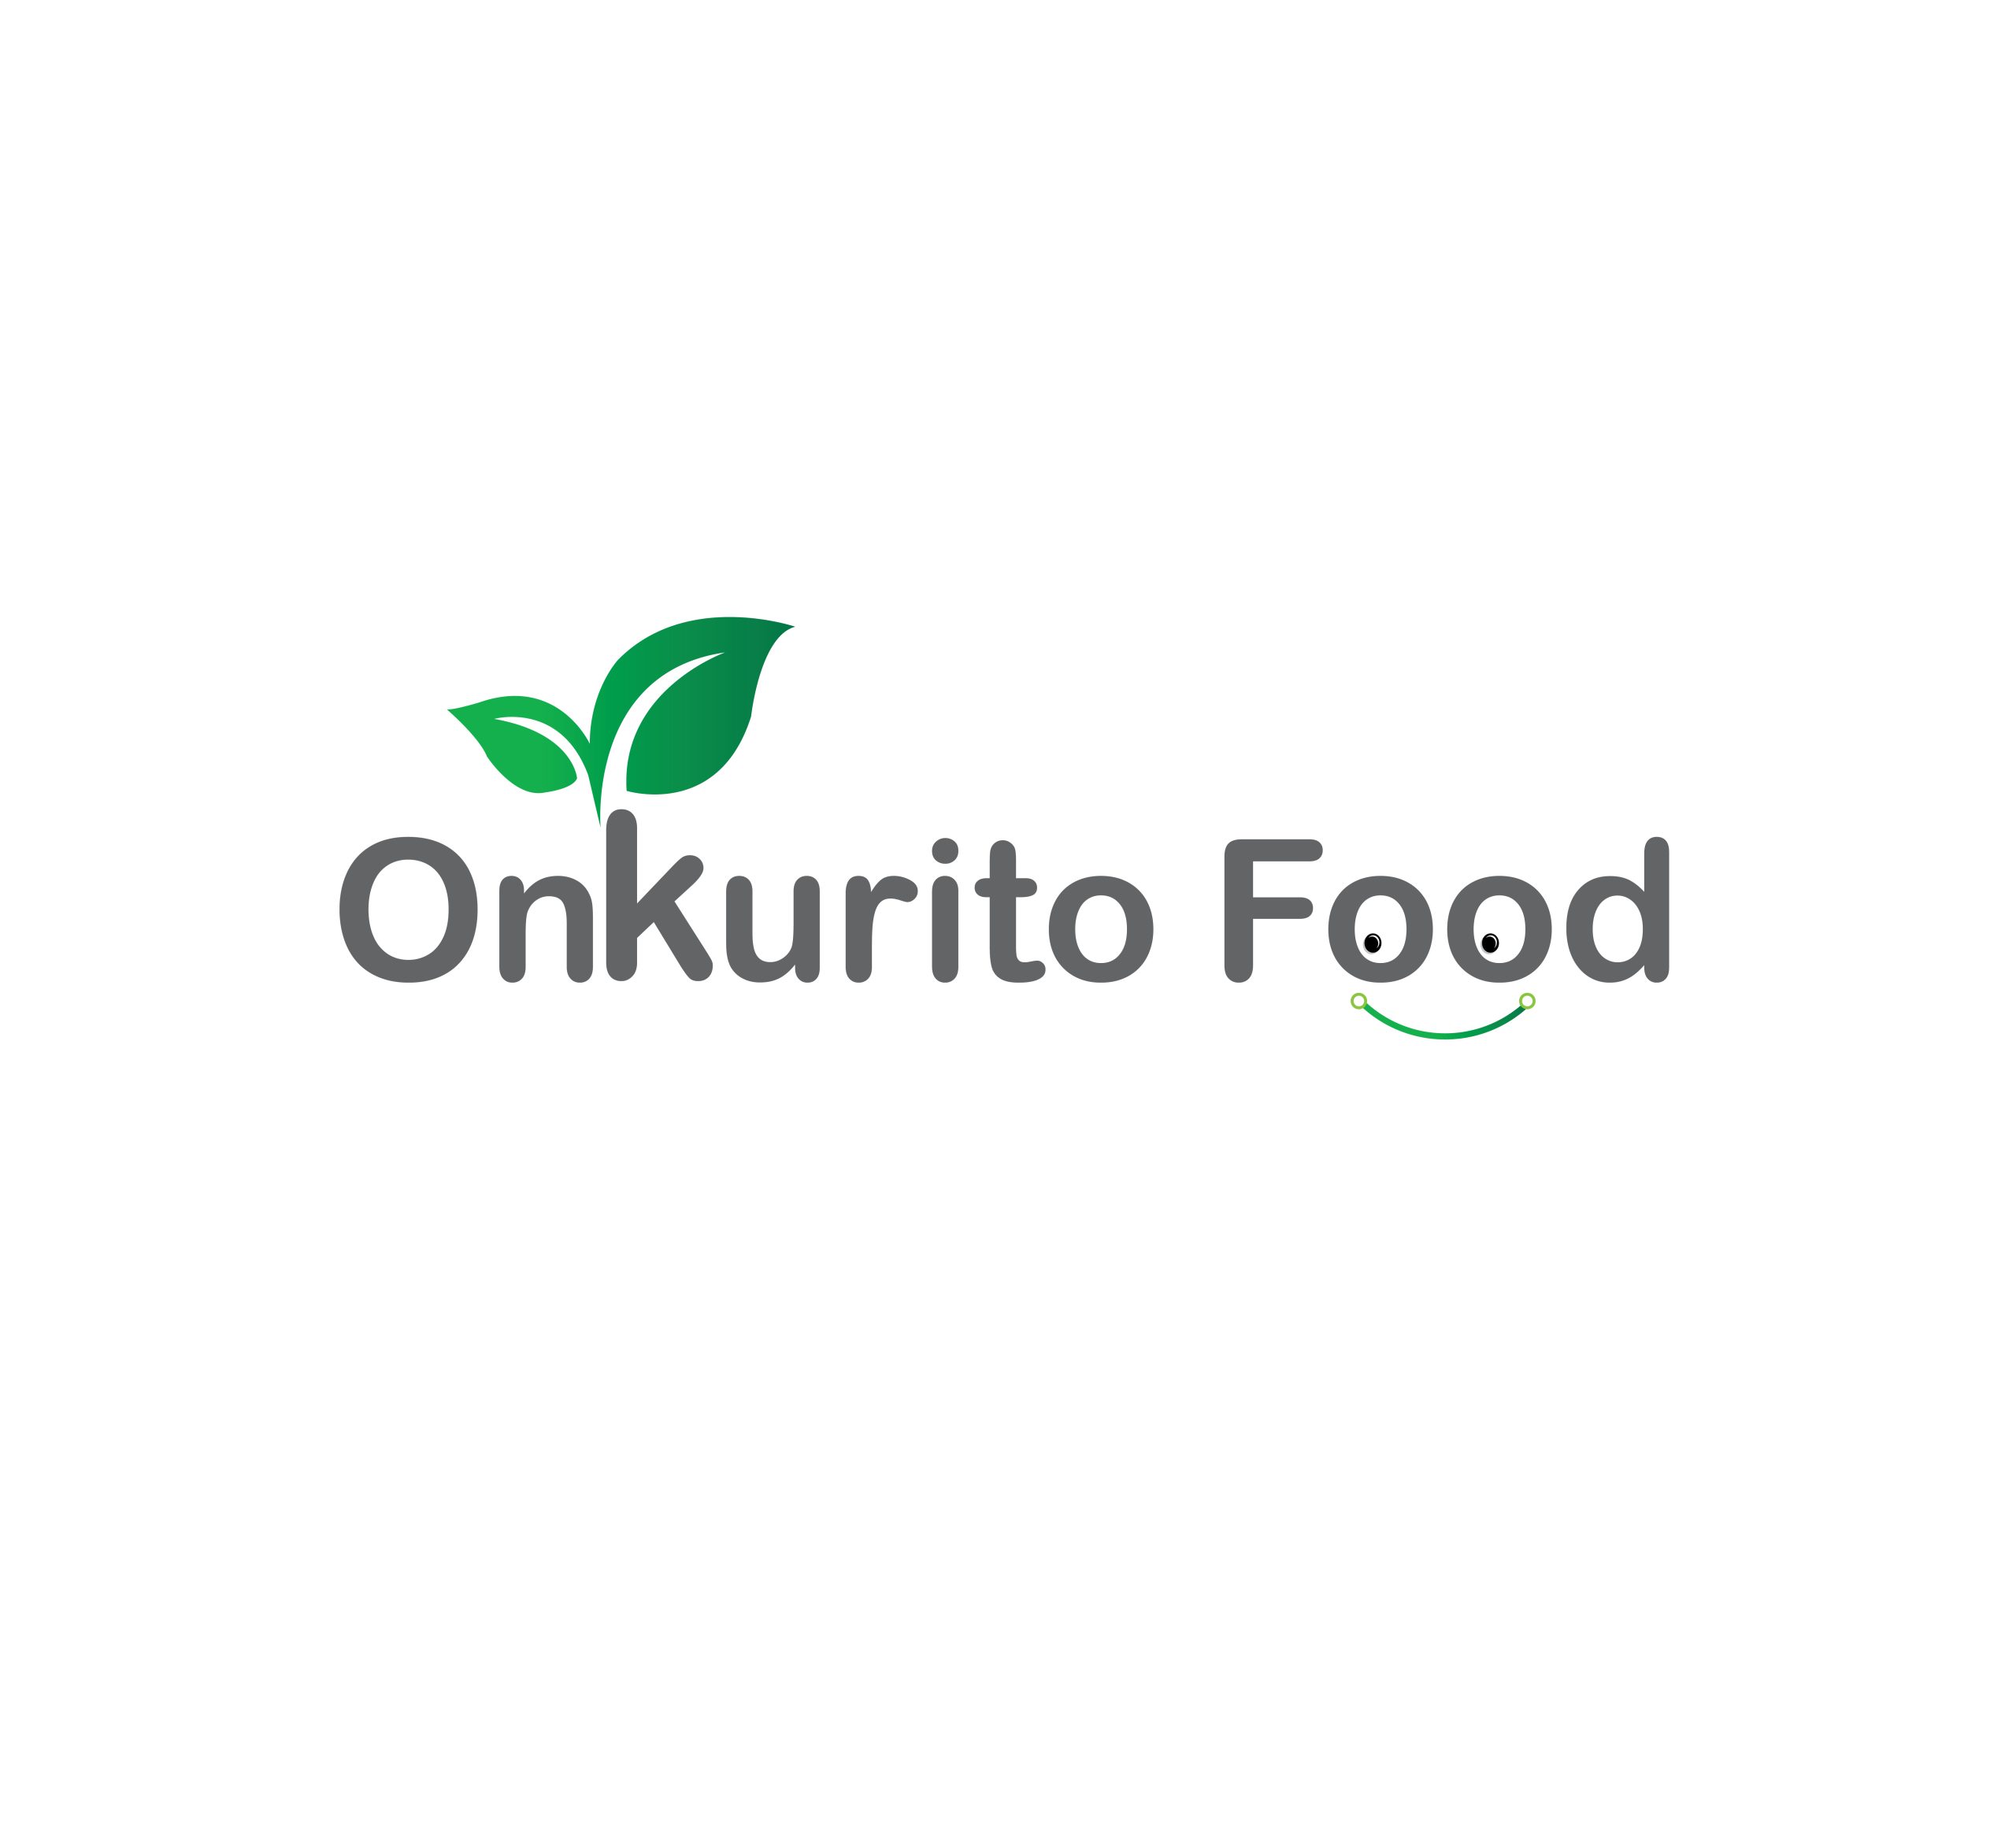  অঙ্কুরিত ফুড – Onkurito Food